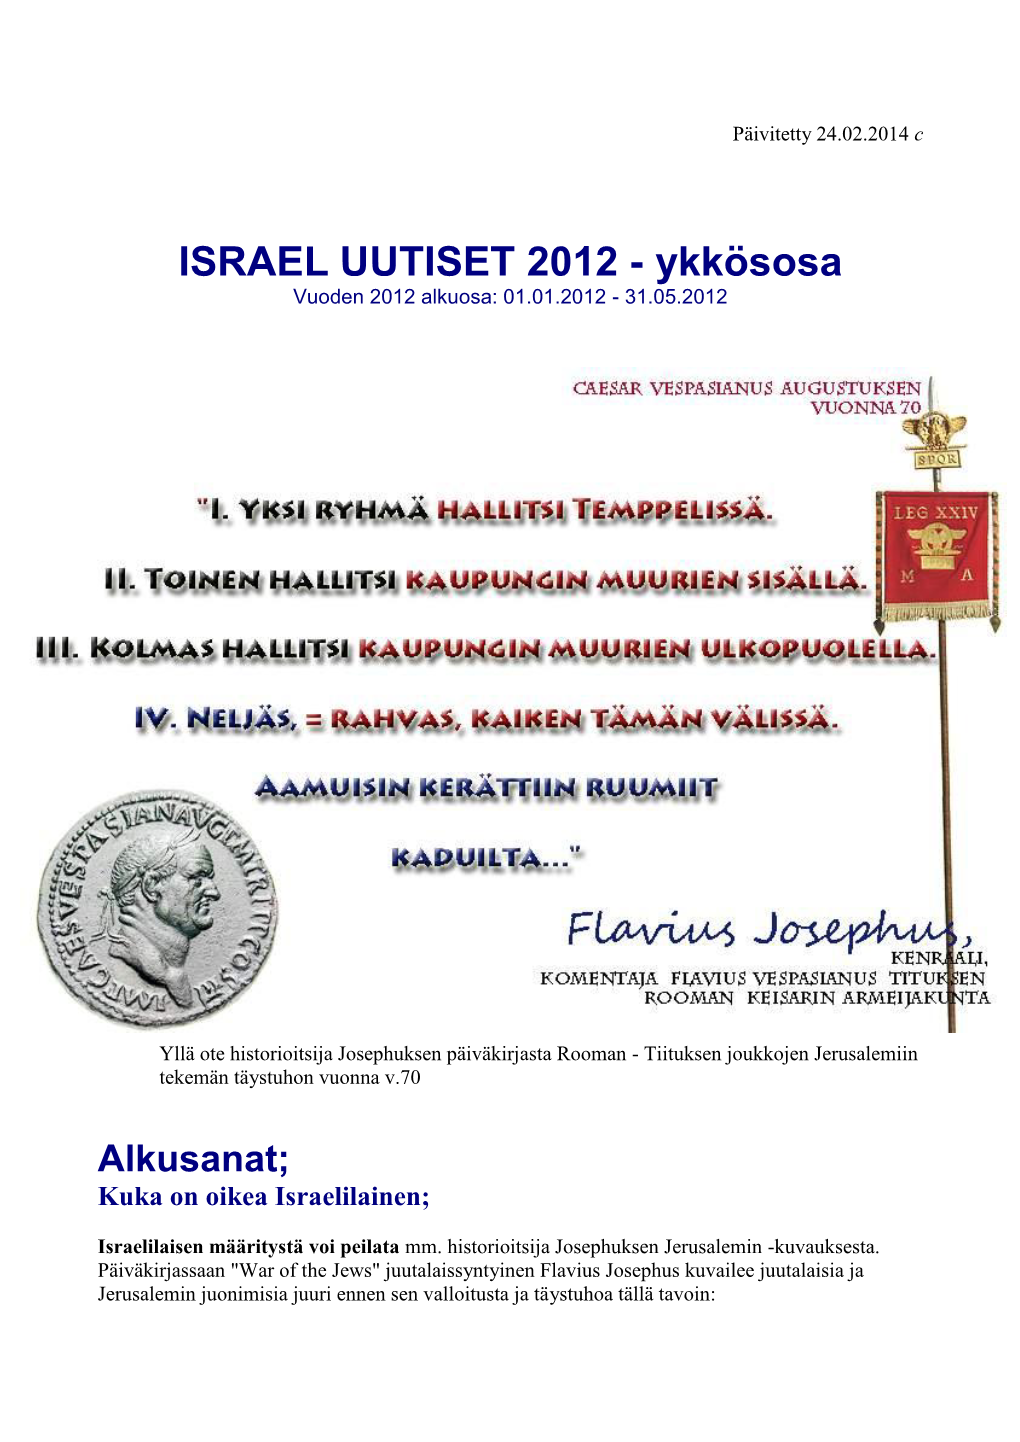 ISRAEL UUTISET 2012 - Ykkösosa Vuoden 2012 Alkuosa: 01.01.2012 - 31.05.2012